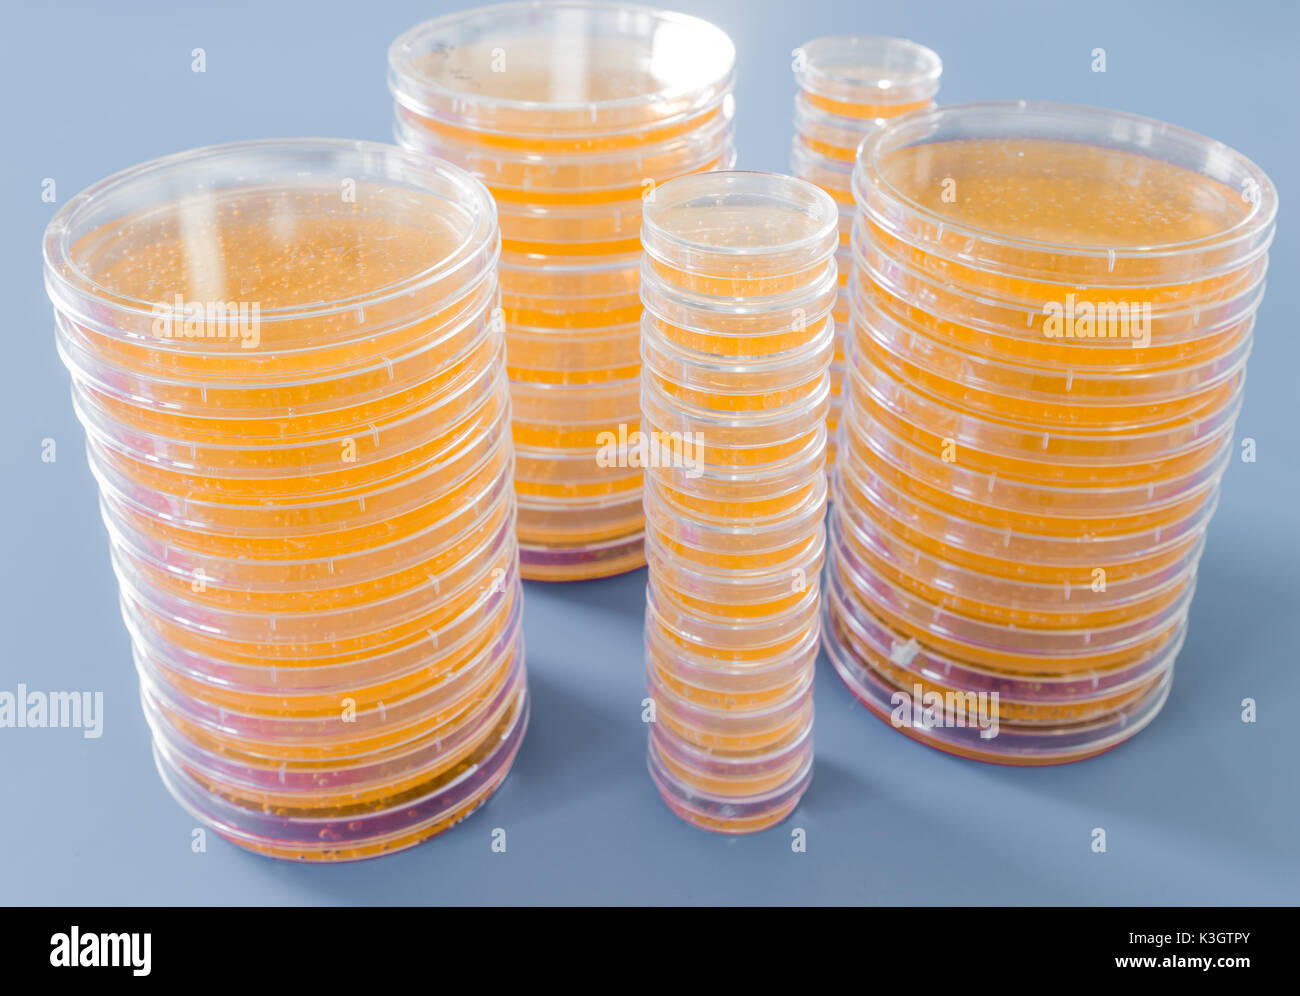 Pile de pétri avec les cultures de micro-organismes, les champignons et les microbes. Une boîte de Petri ( Boîte de Pétri) connu sous le nom de boîte de Pétri ou cell-culture di Banque D'Images